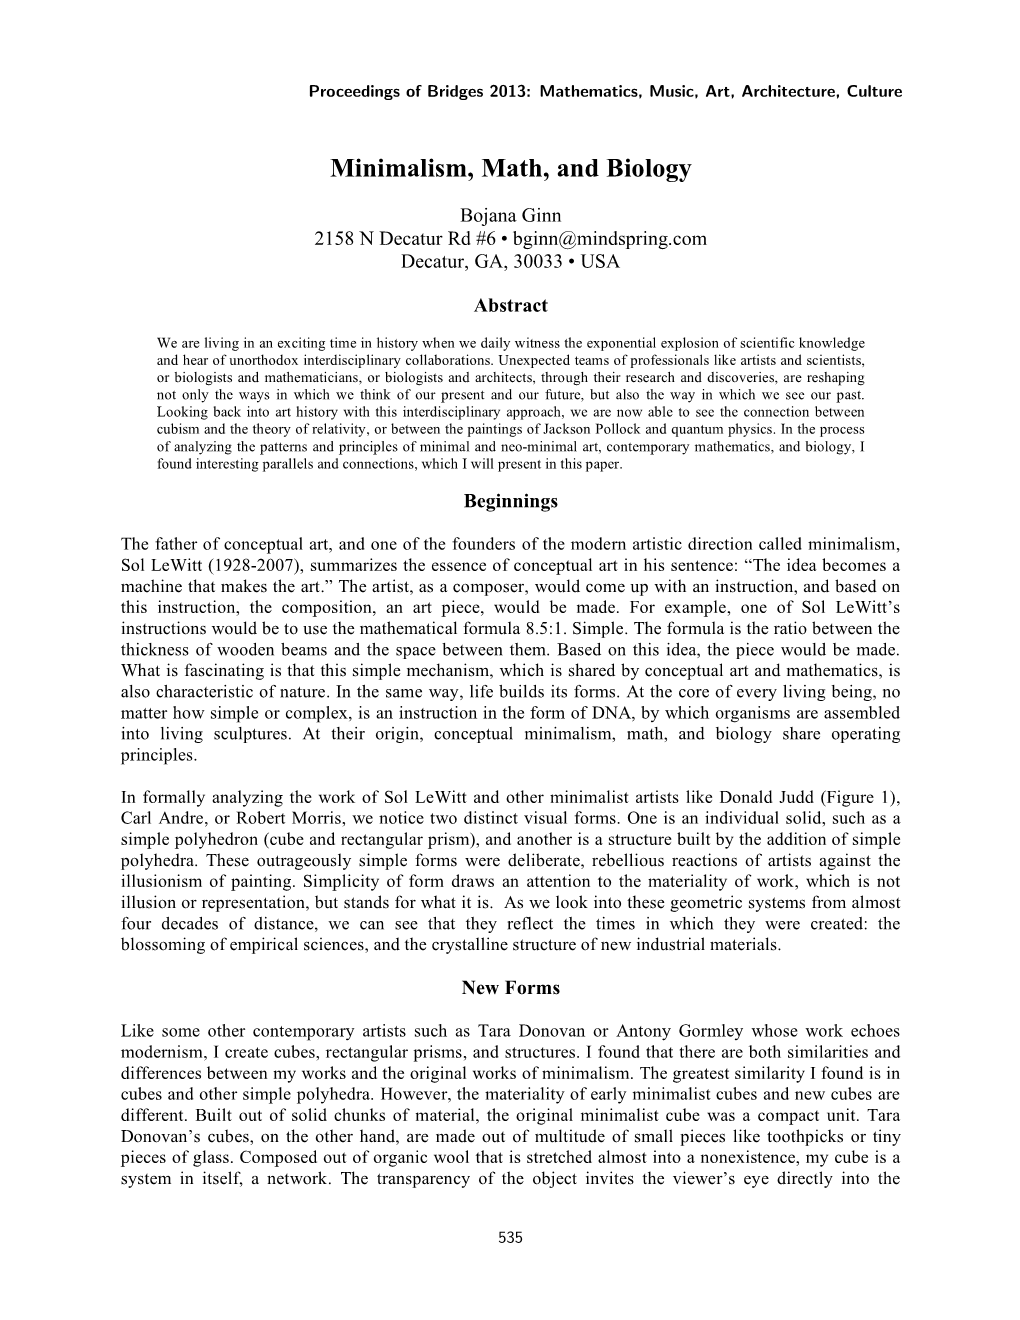 Minimalism, Math, and Biology